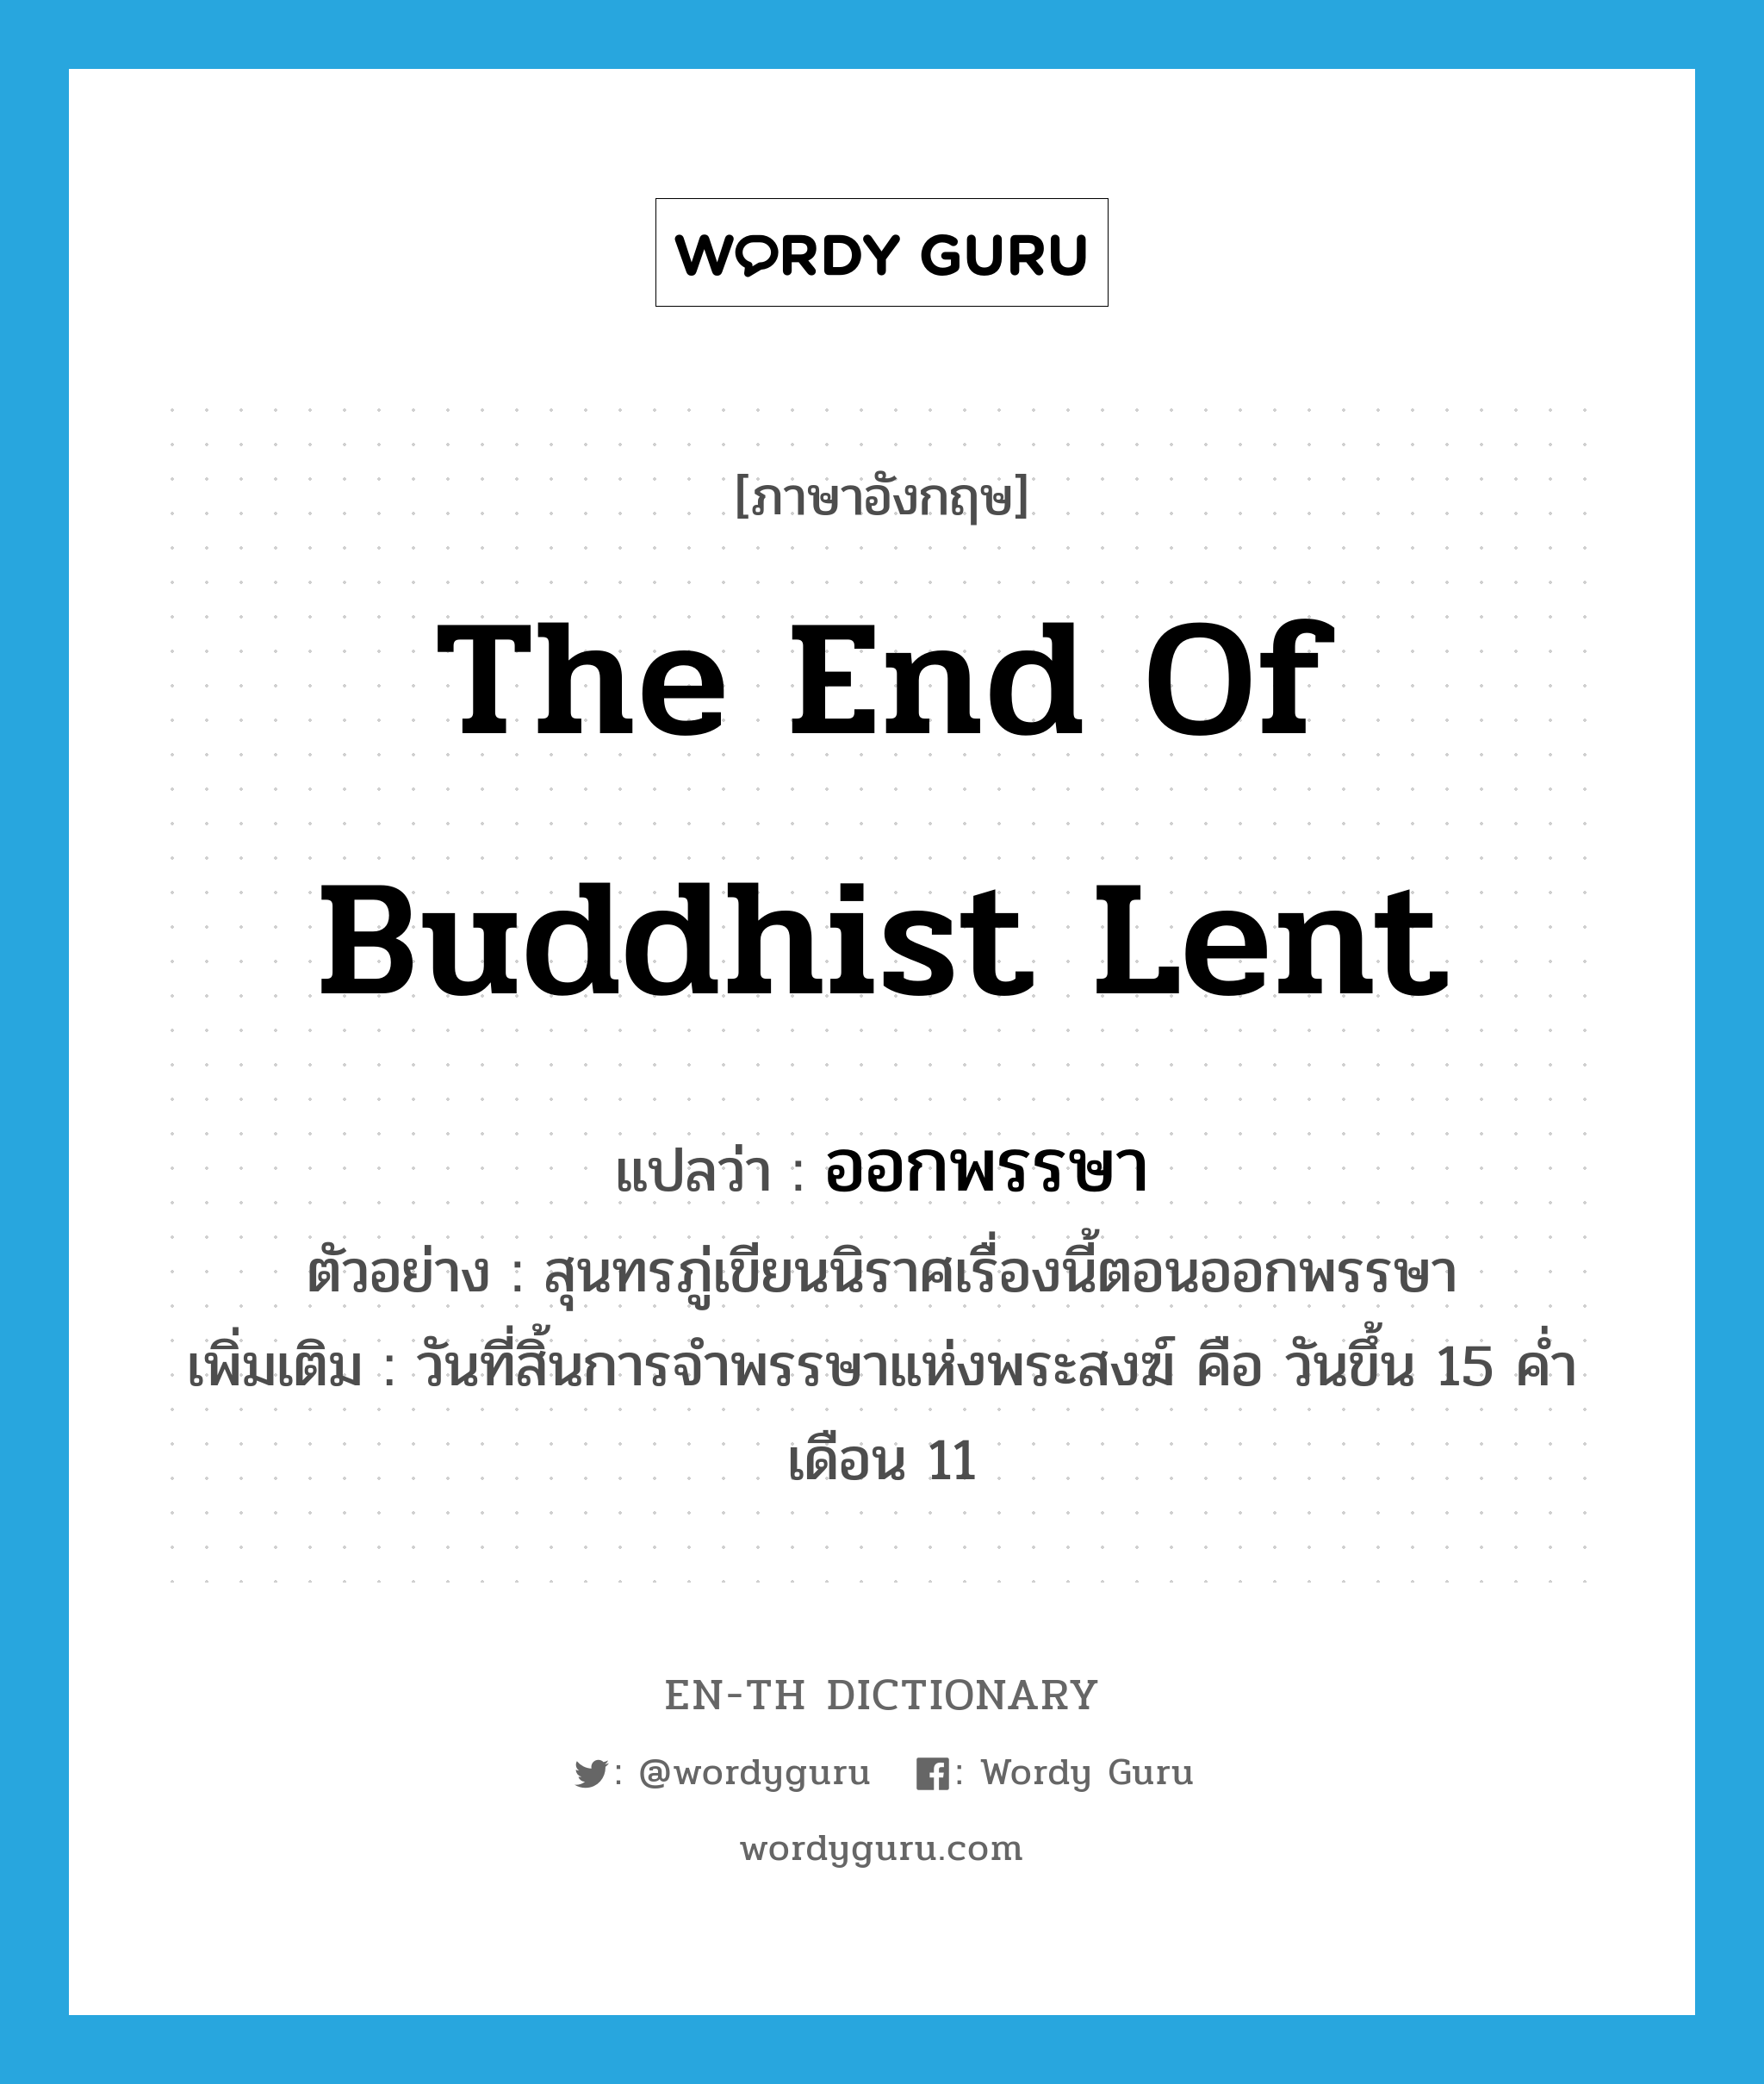 the end of Buddhist lent แปลว่า?, คำศัพท์ภาษาอังกฤษ the end of Buddhist lent แปลว่า ออกพรรษา ประเภท N ตัวอย่าง สุนทรภู่เขียนนิราศเรื่องนี้ตอนออกพรรษา เพิ่มเติม วันที่สิ้นการจำพรรษาแห่งพระสงฆ์ คือ วันขึ้น 15 ค่ำเดือน 11 หมวด N